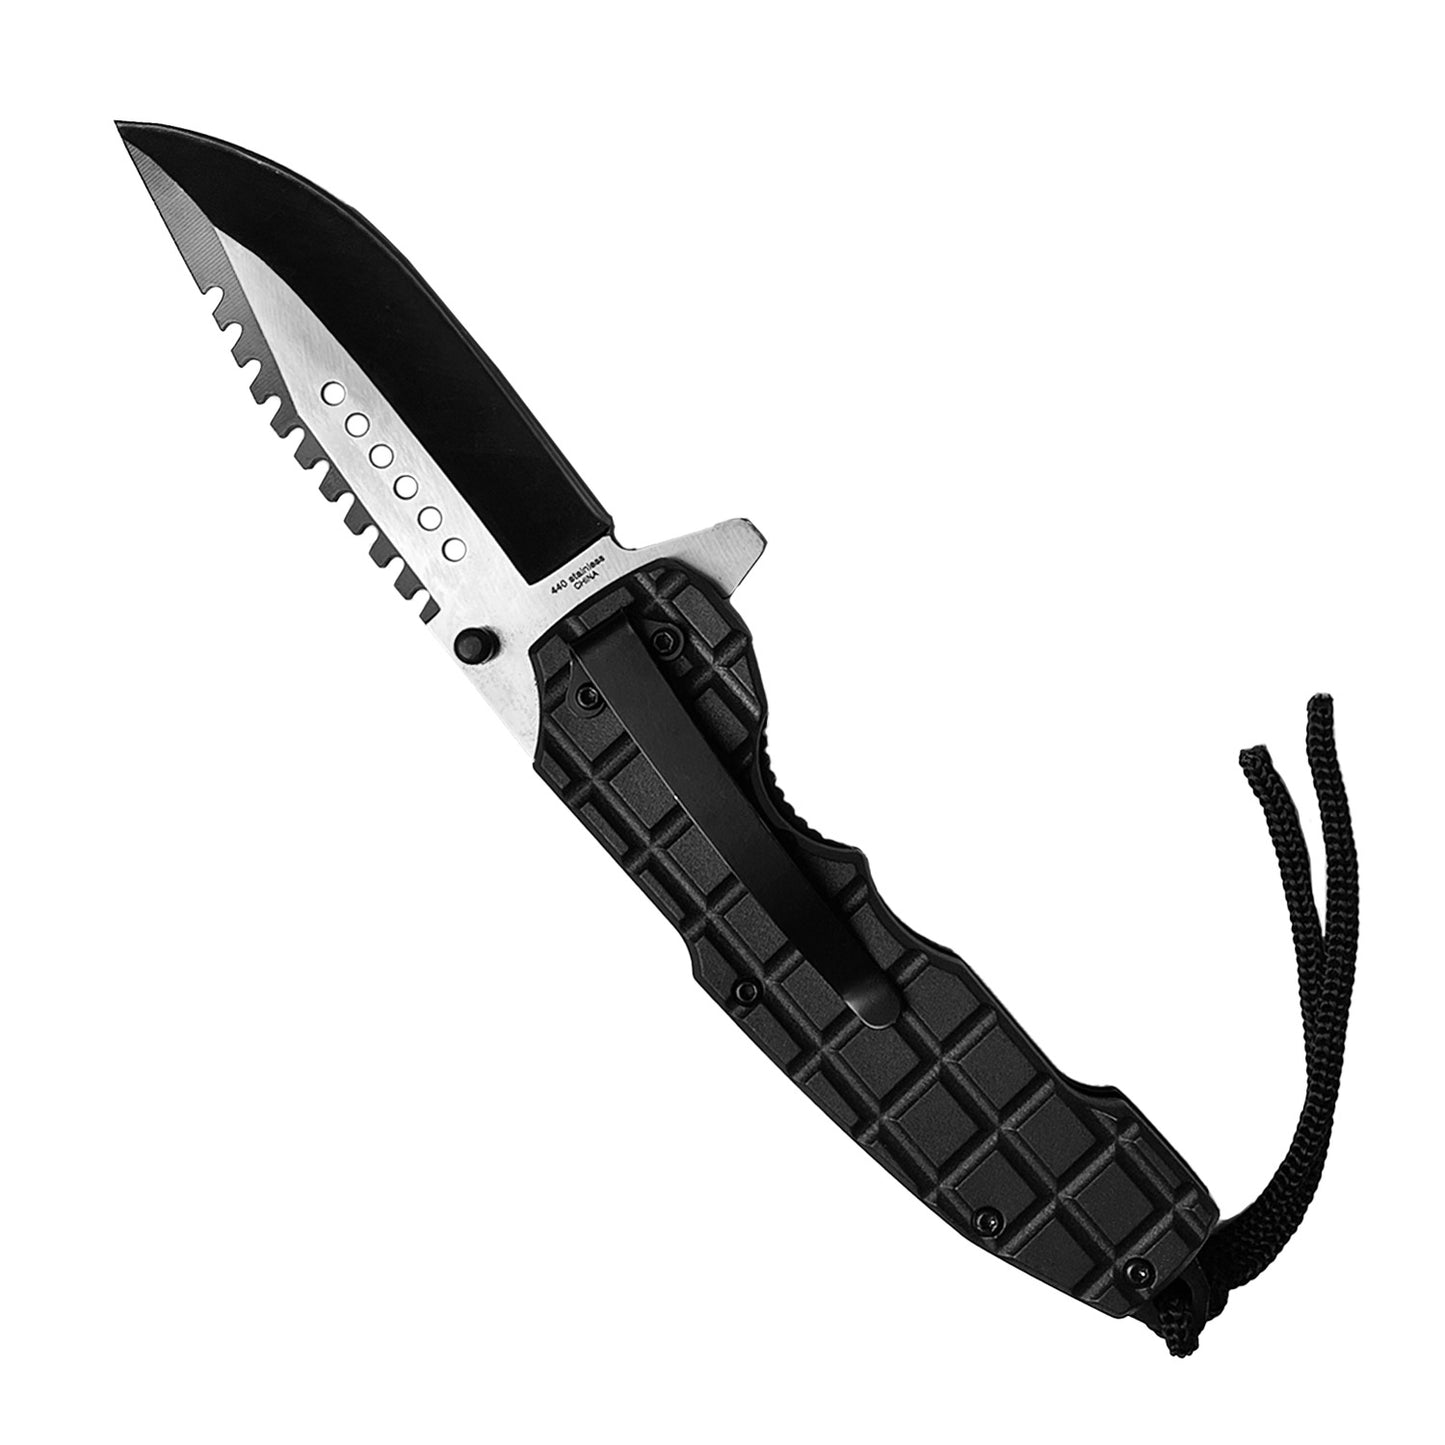 8" Spring Assisted Pocket Knife Green Shark Handle